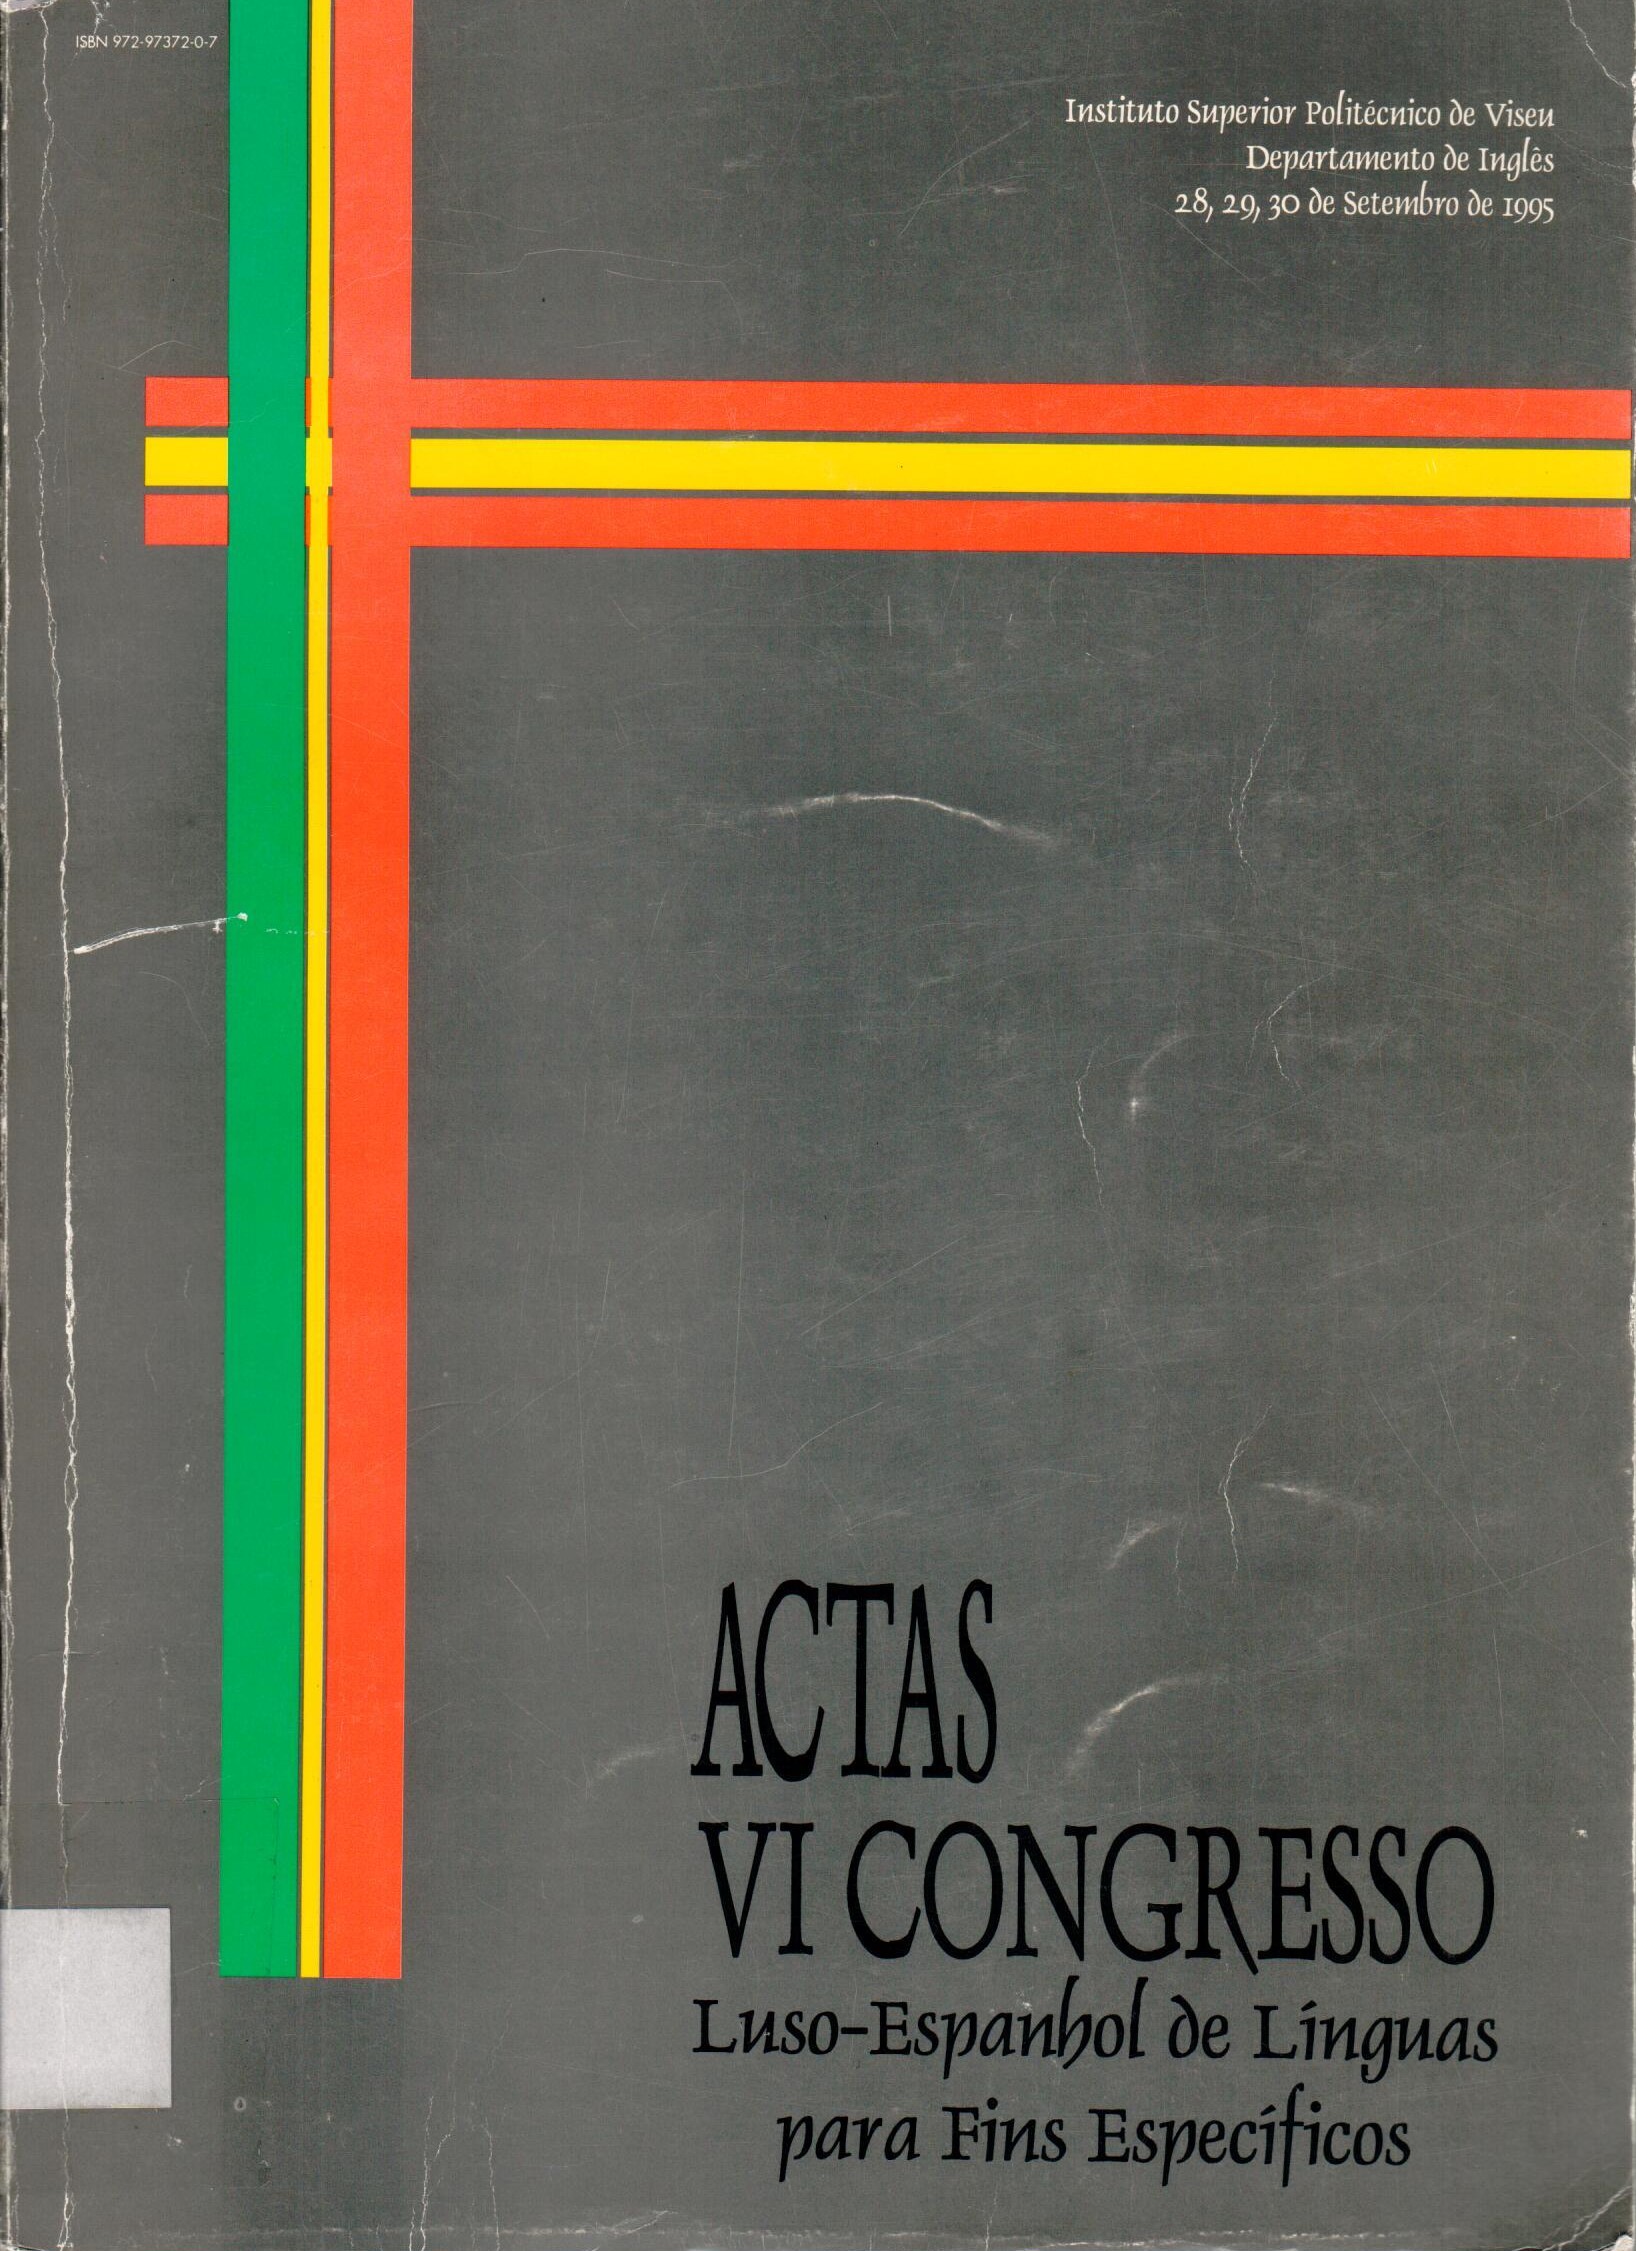 Imagen de portada del libro Actas do VI Congresso Luso-Espanhol de Línguas para Fins Específicos